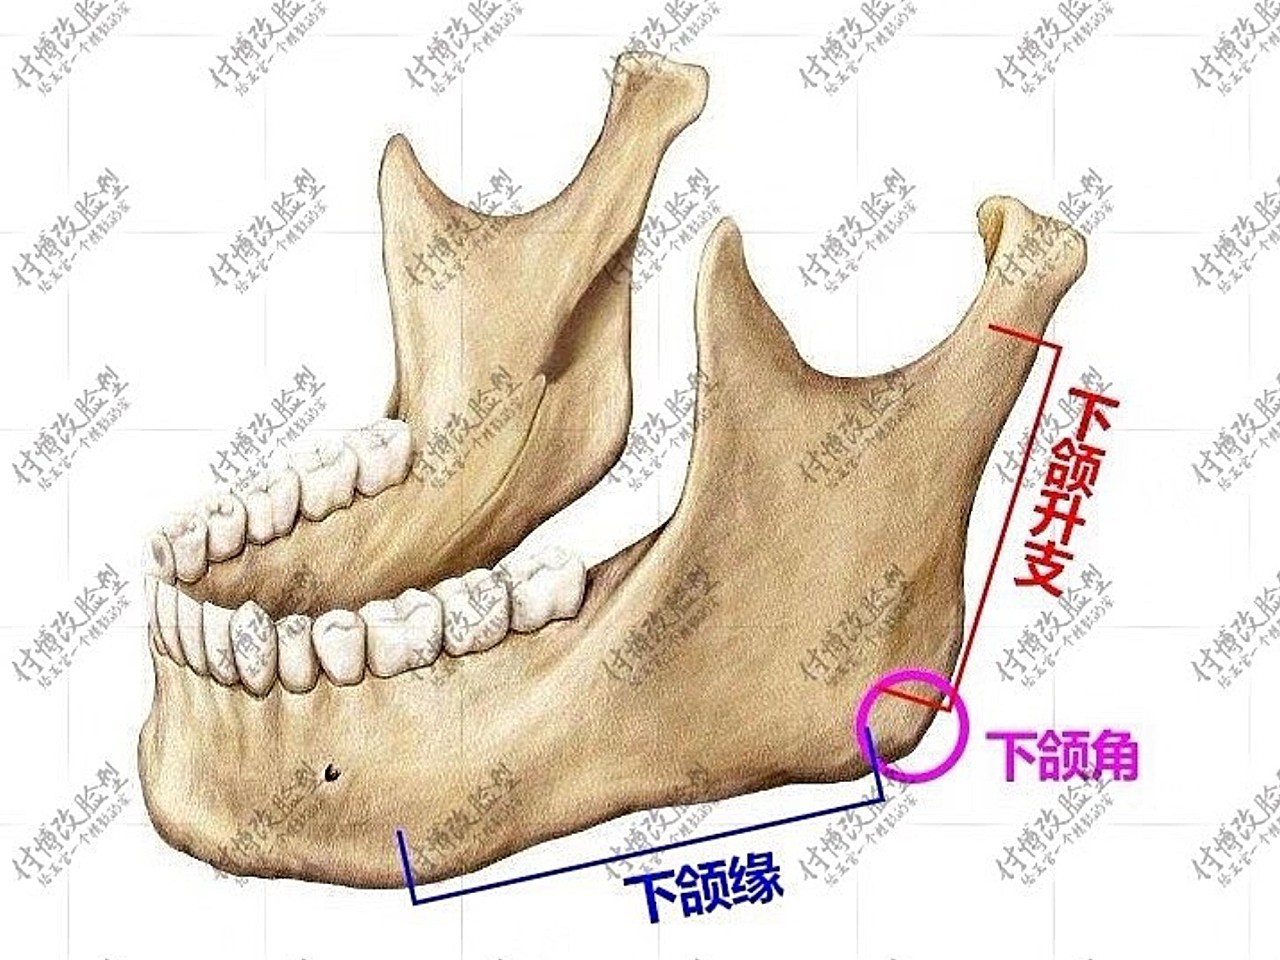 下颌升支是一块长方形的骨板,长度是耳垂下方到下颌角的距离